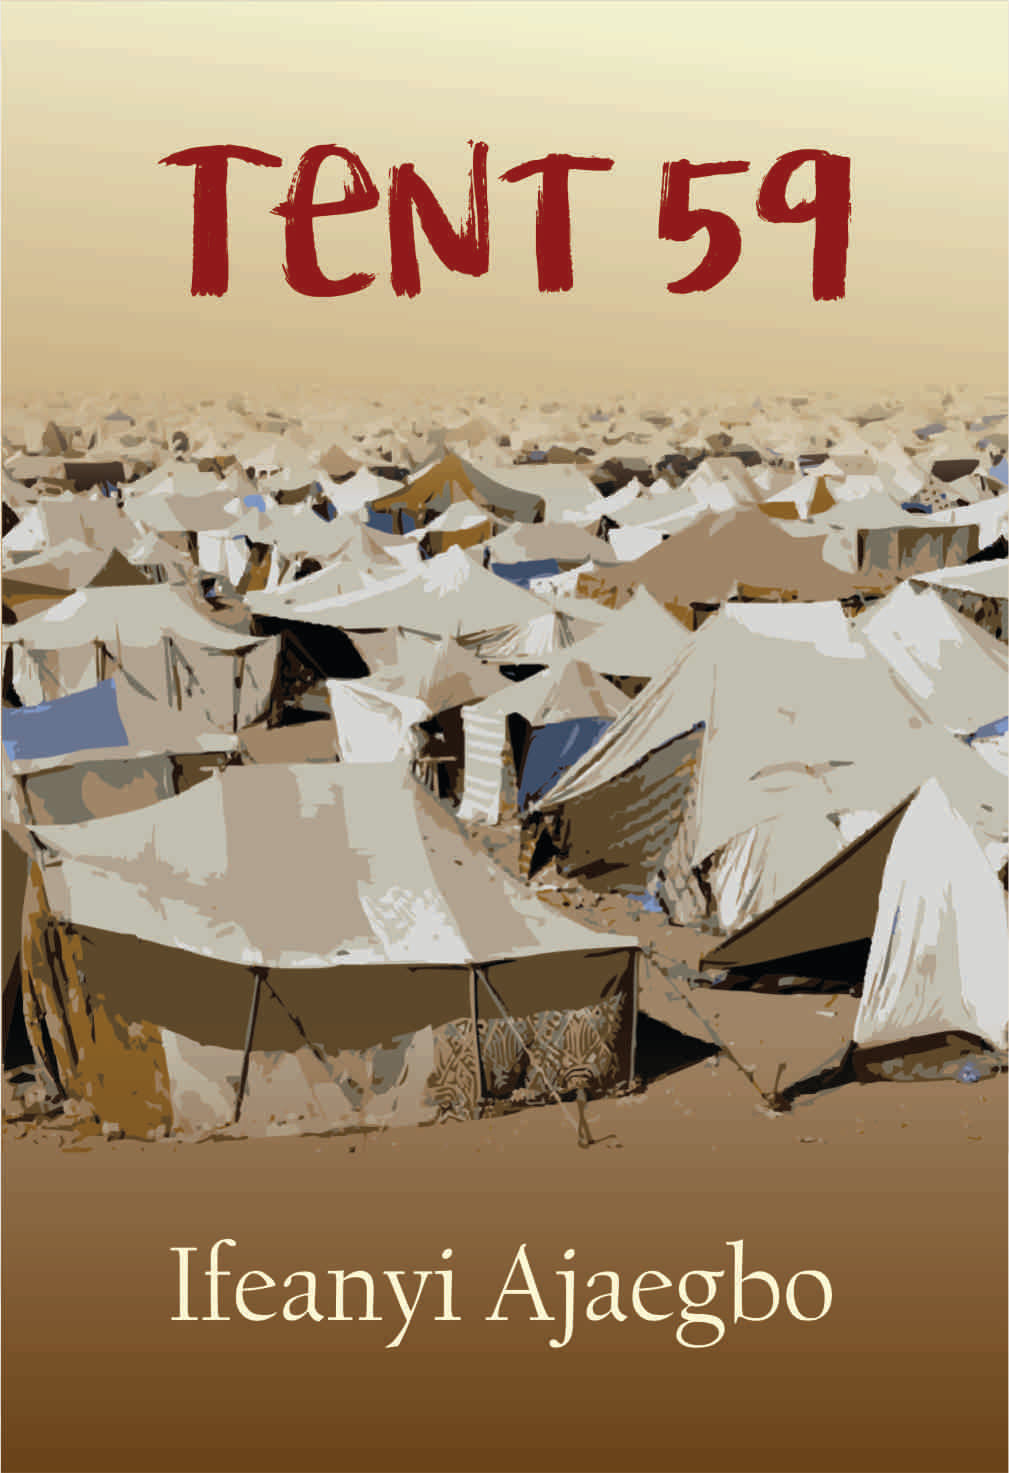 Tent 59